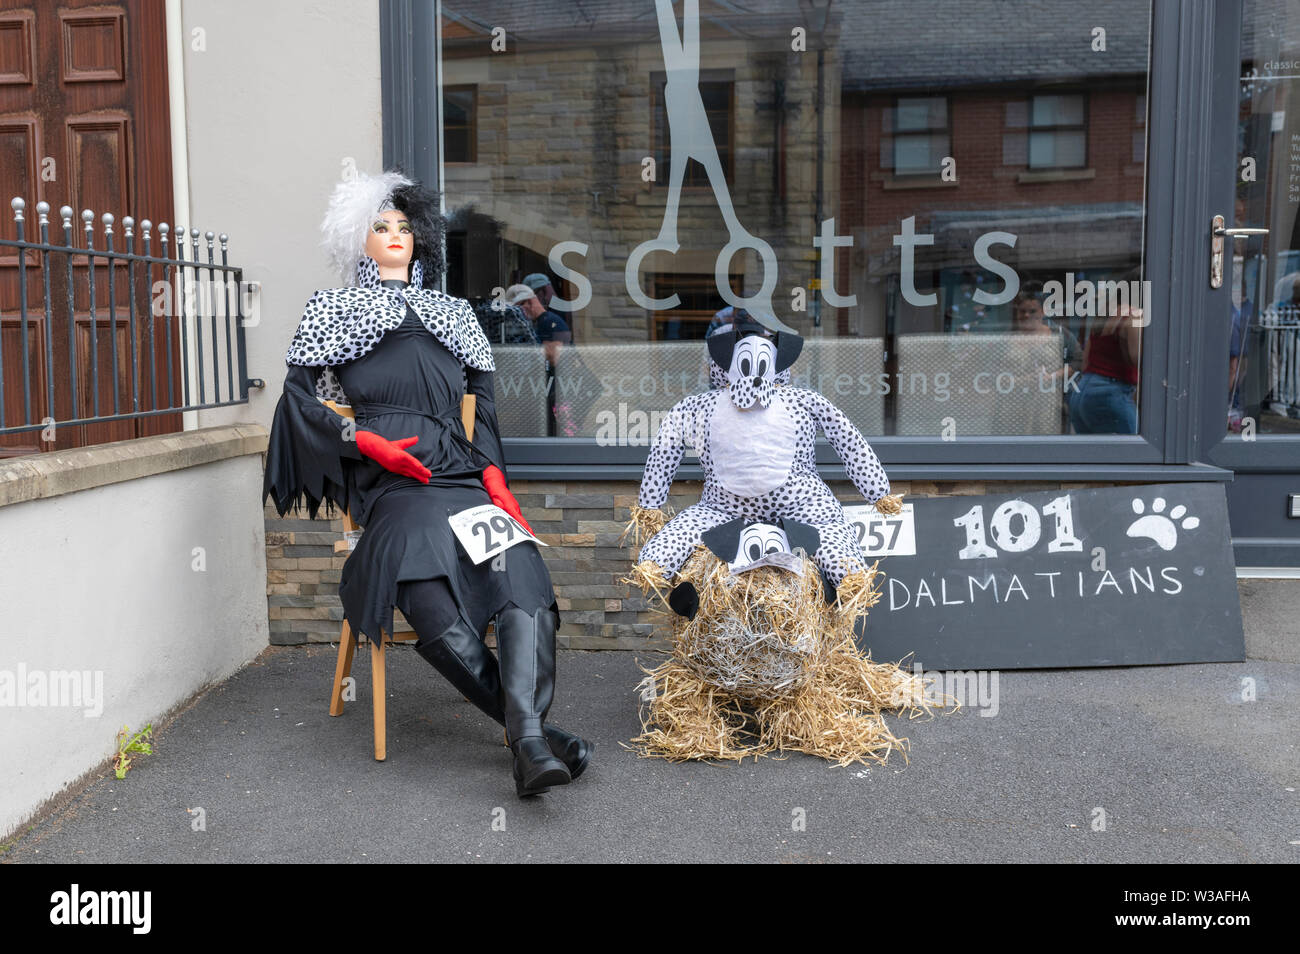 An exhibit at the Garstang Scarecrow Festival. Cruella De Vil and a Dalmatian dog Stock Photo